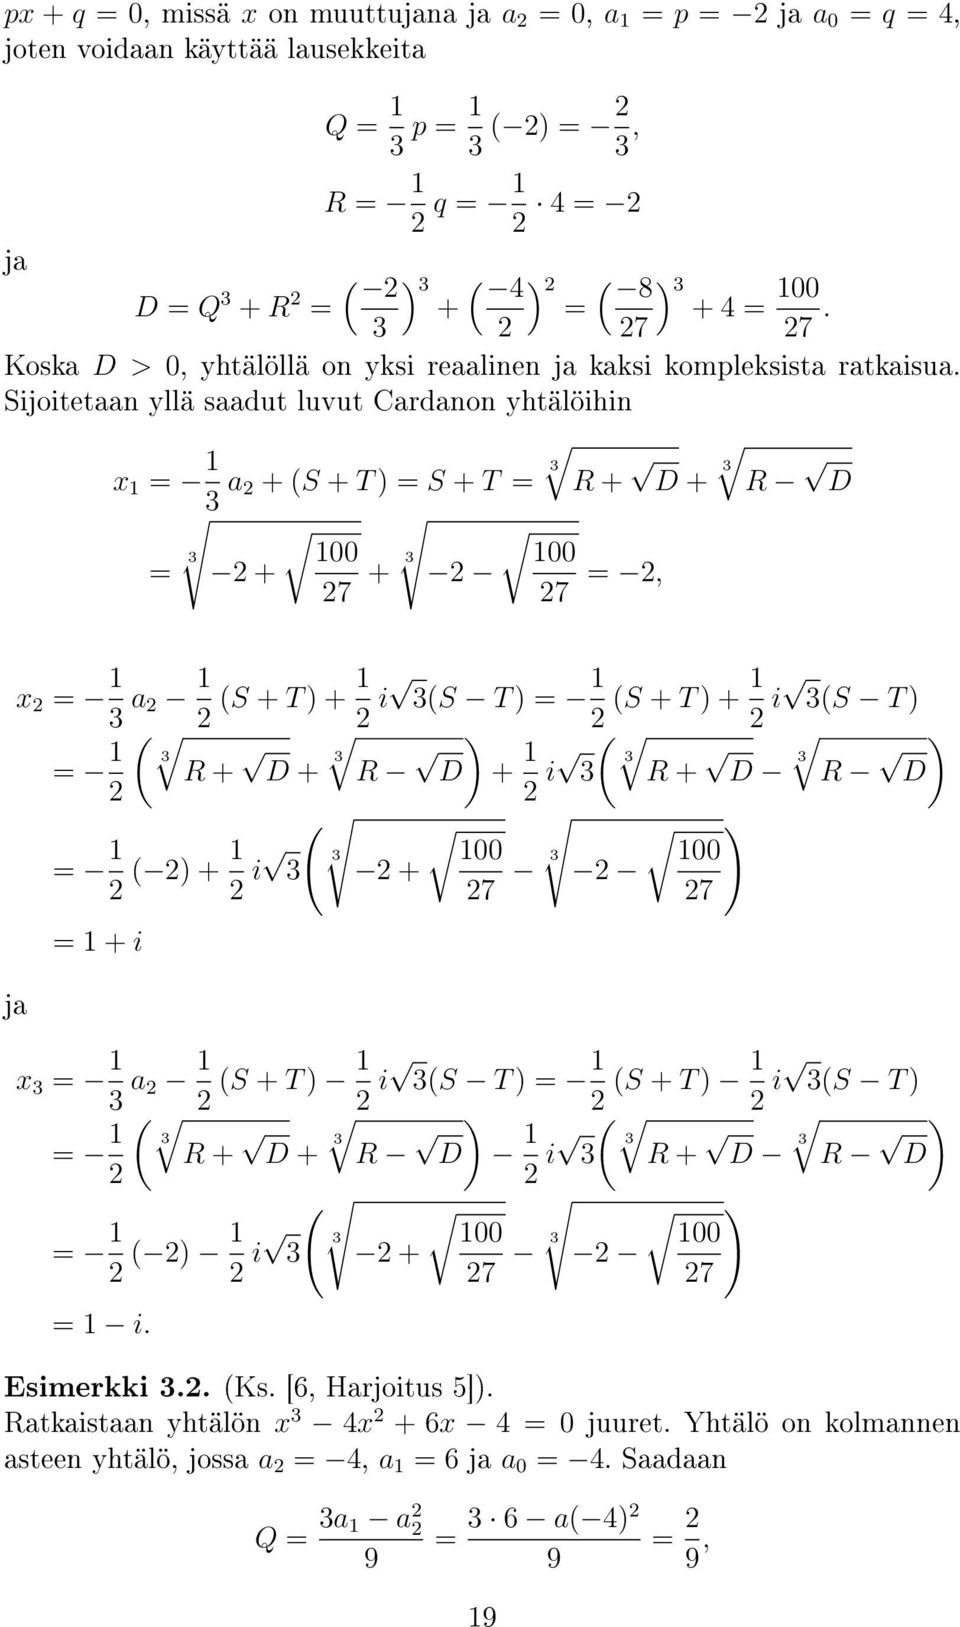 Sijoitetaan yllä saadut luvut Cardanon yhtälöihin x 1 = 1 a + (S + T ) = S + T = R + D + R D 100 100 = + 7 + 7 =, x = 1 a 1 (S + T ) + 1 i (S T ) = 1 (S + T ) + 1 i (S T ) = 1 ( R + D + R ) D + 1 ( i